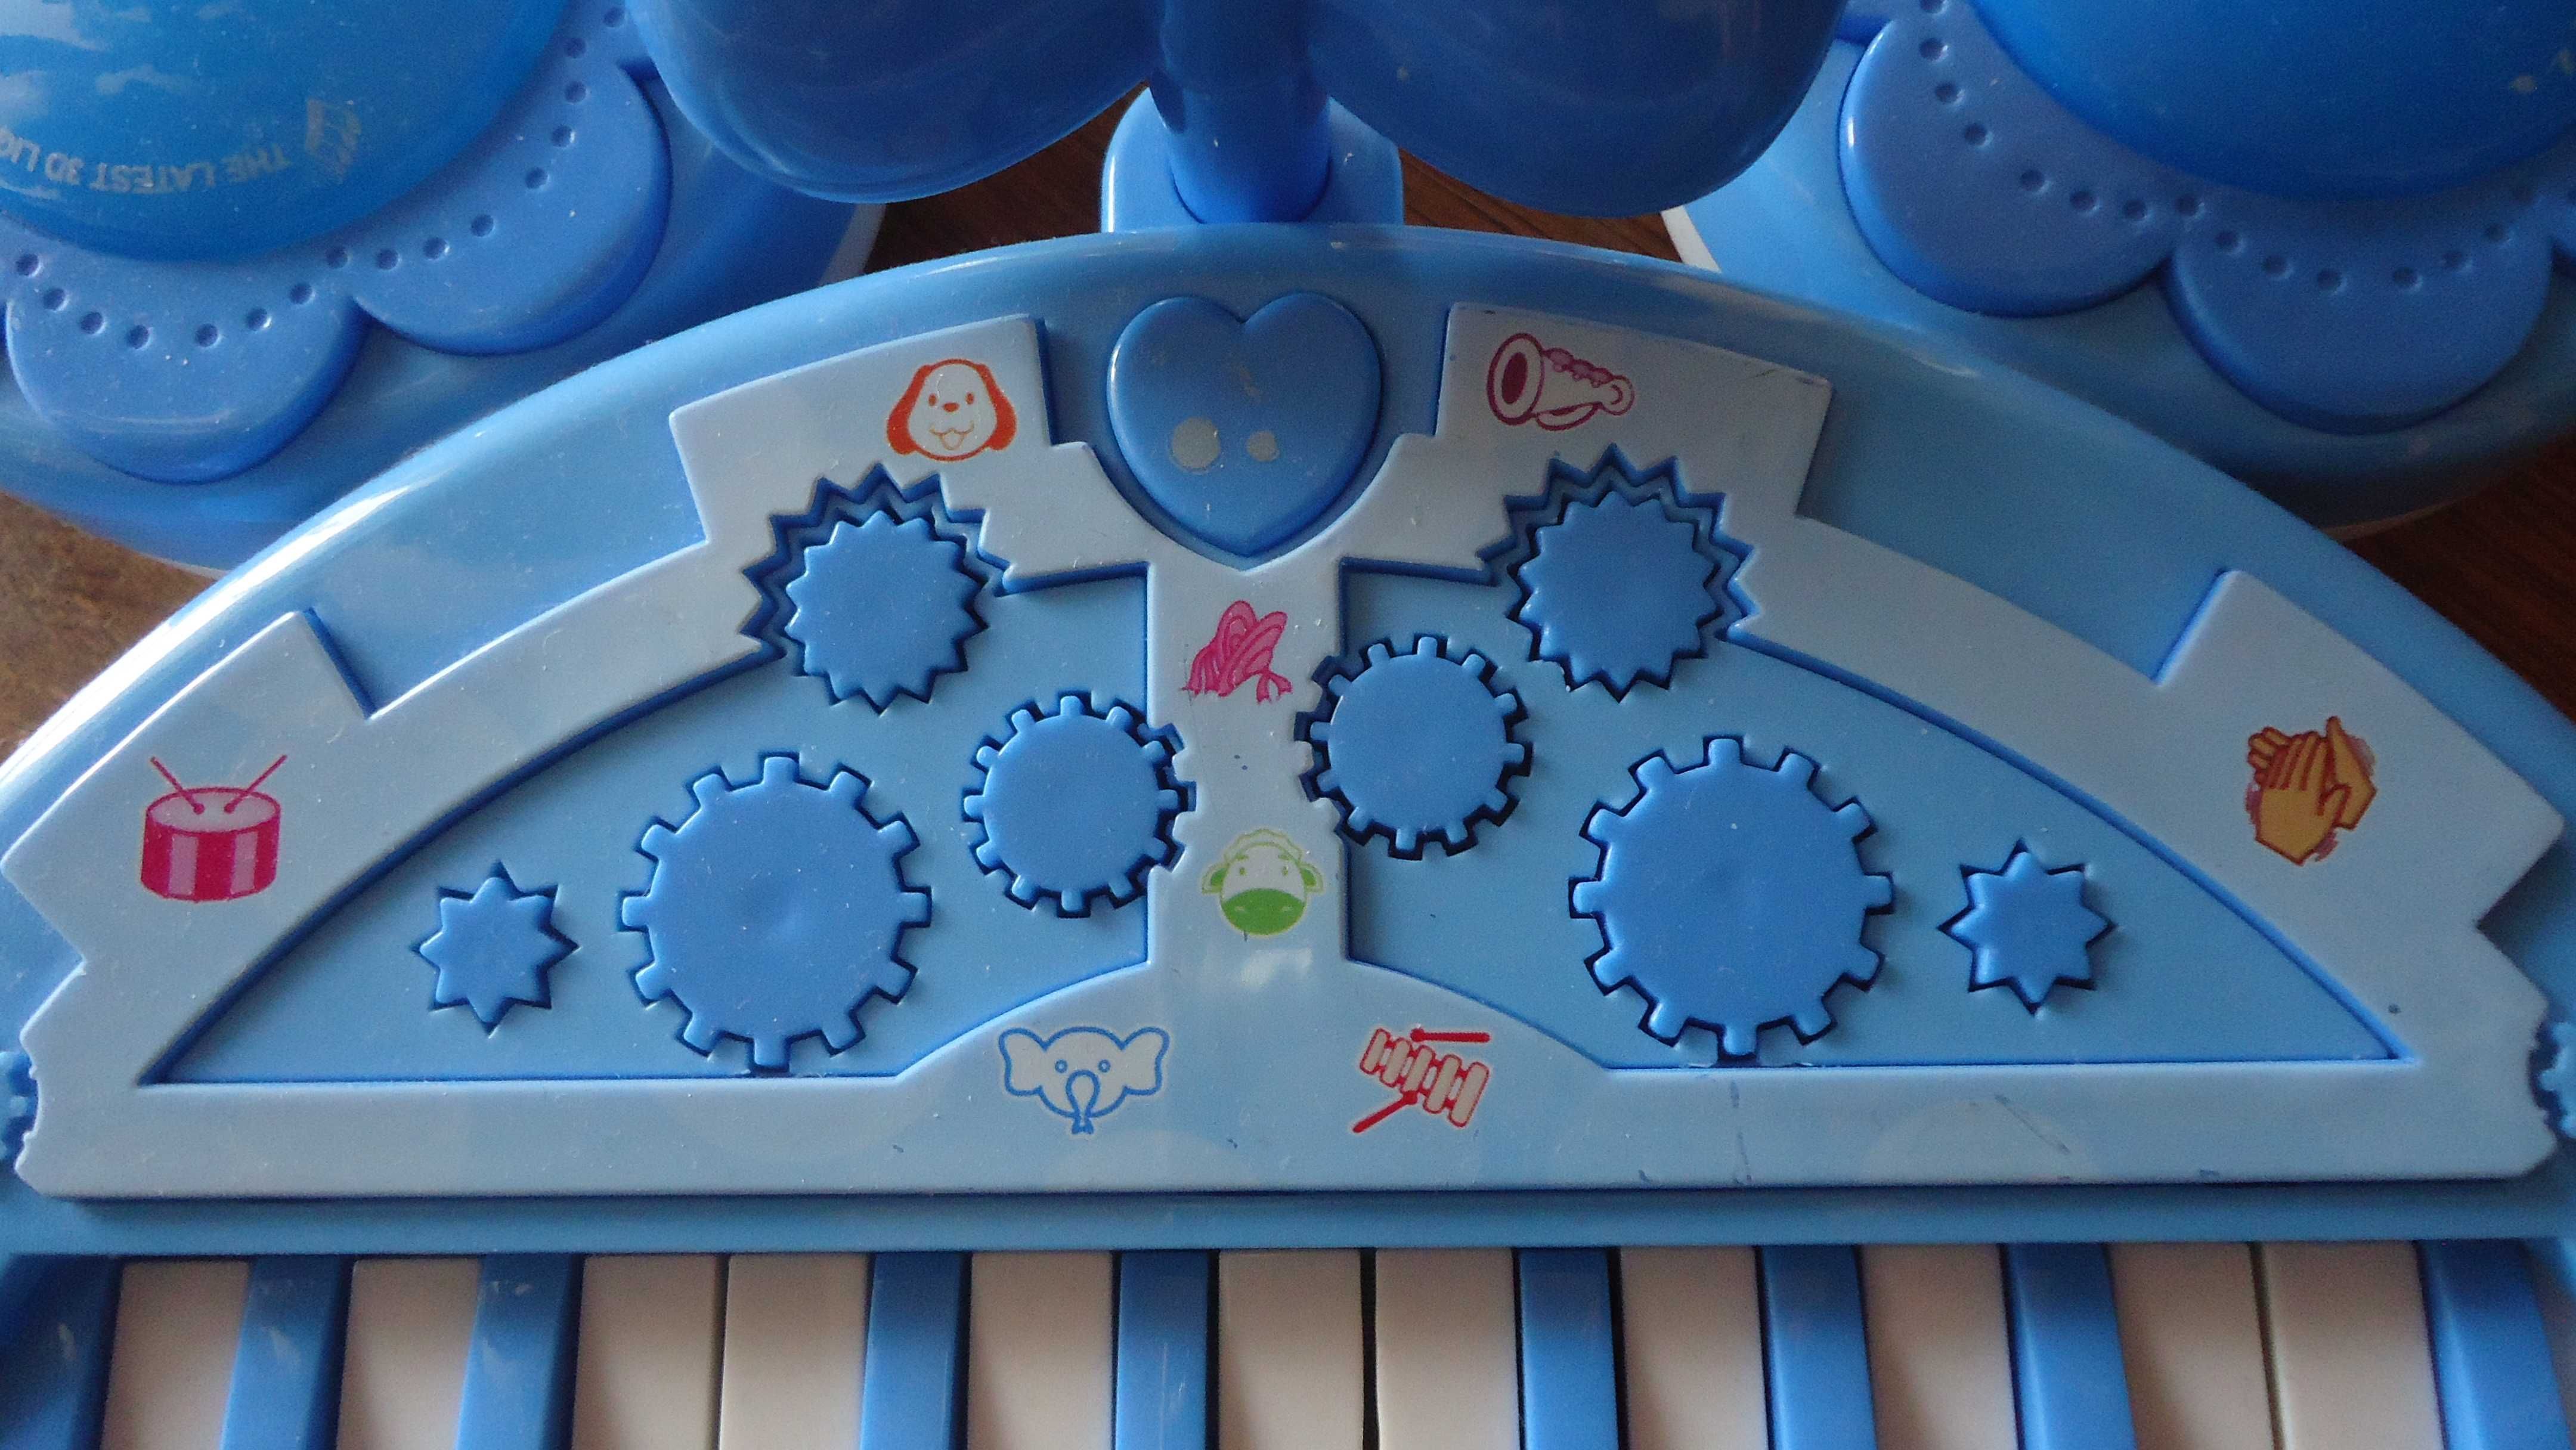 SMIKI pianinko dla dzieci SMIKI pianino dla dzieci SMYK organki organy